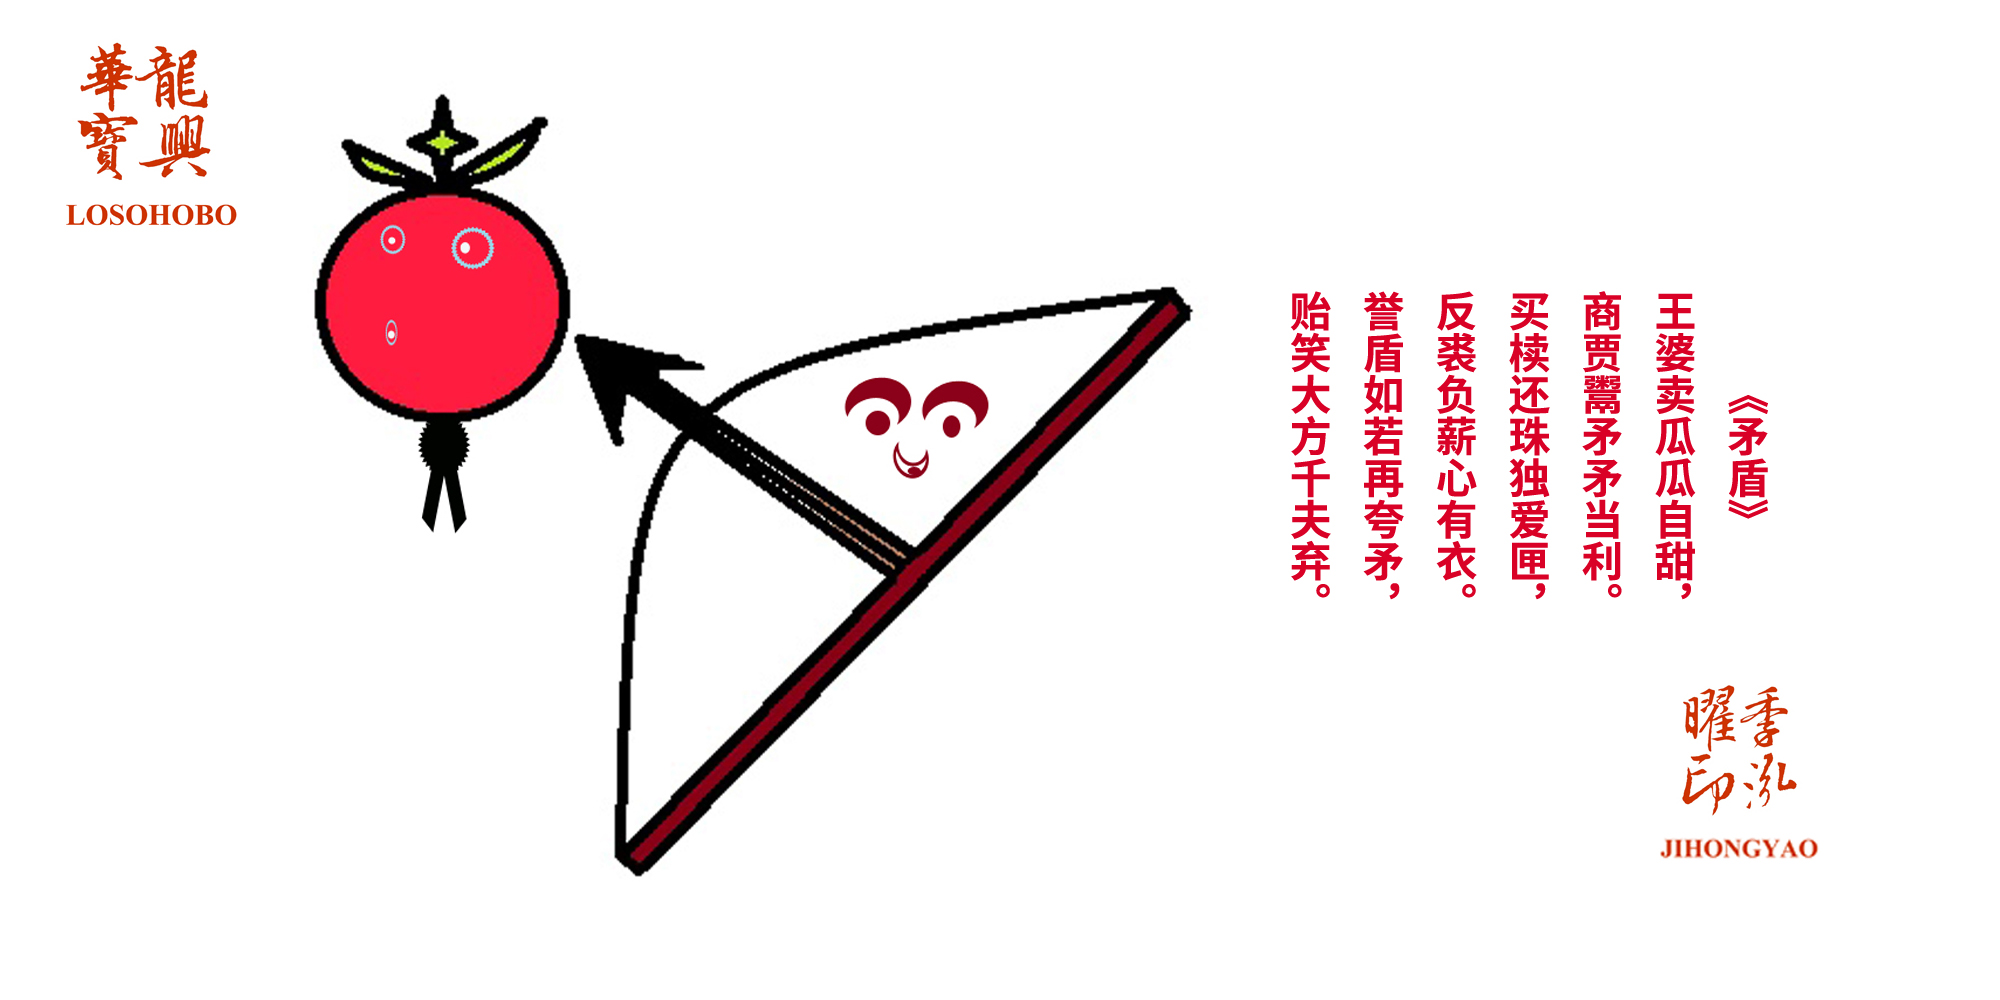 《箭果逗趣》（ Jian Guo Dou Qu & The arrow enjoys bantering with the apple）